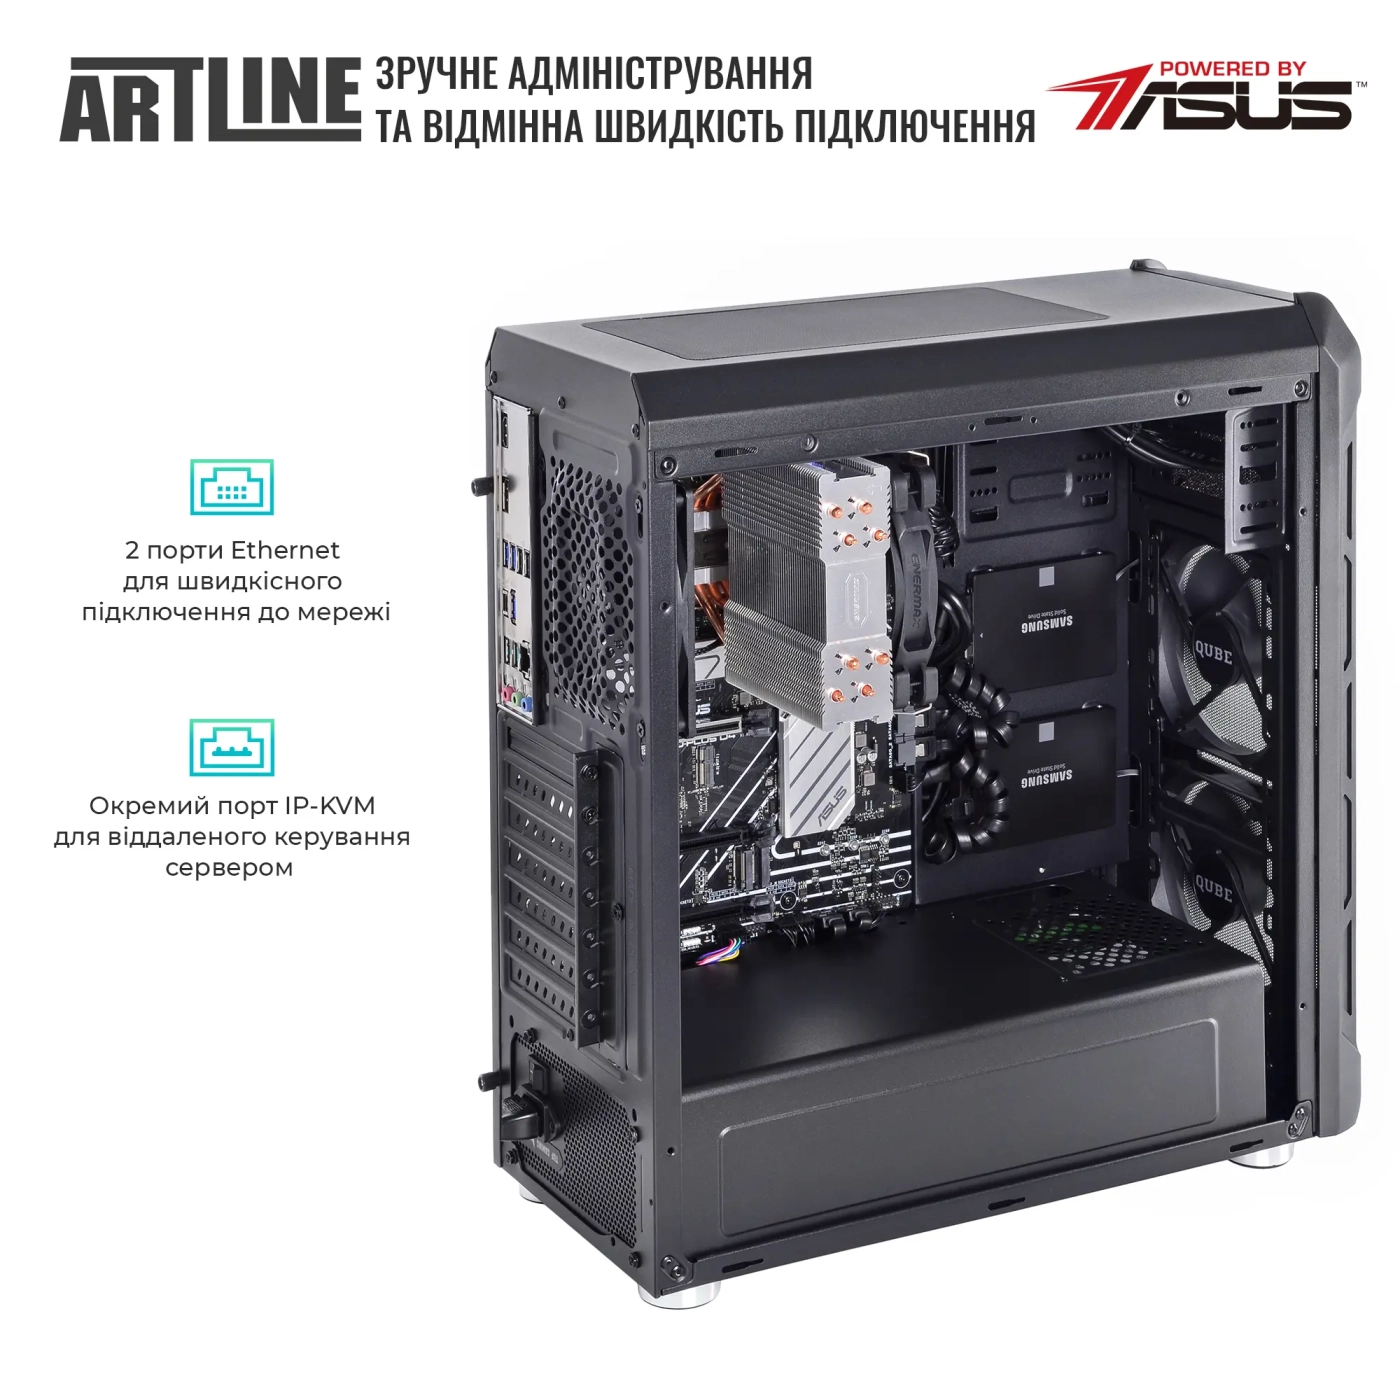 Купить Сервер ARTLINE Business T27 (T27v31) - фото 6